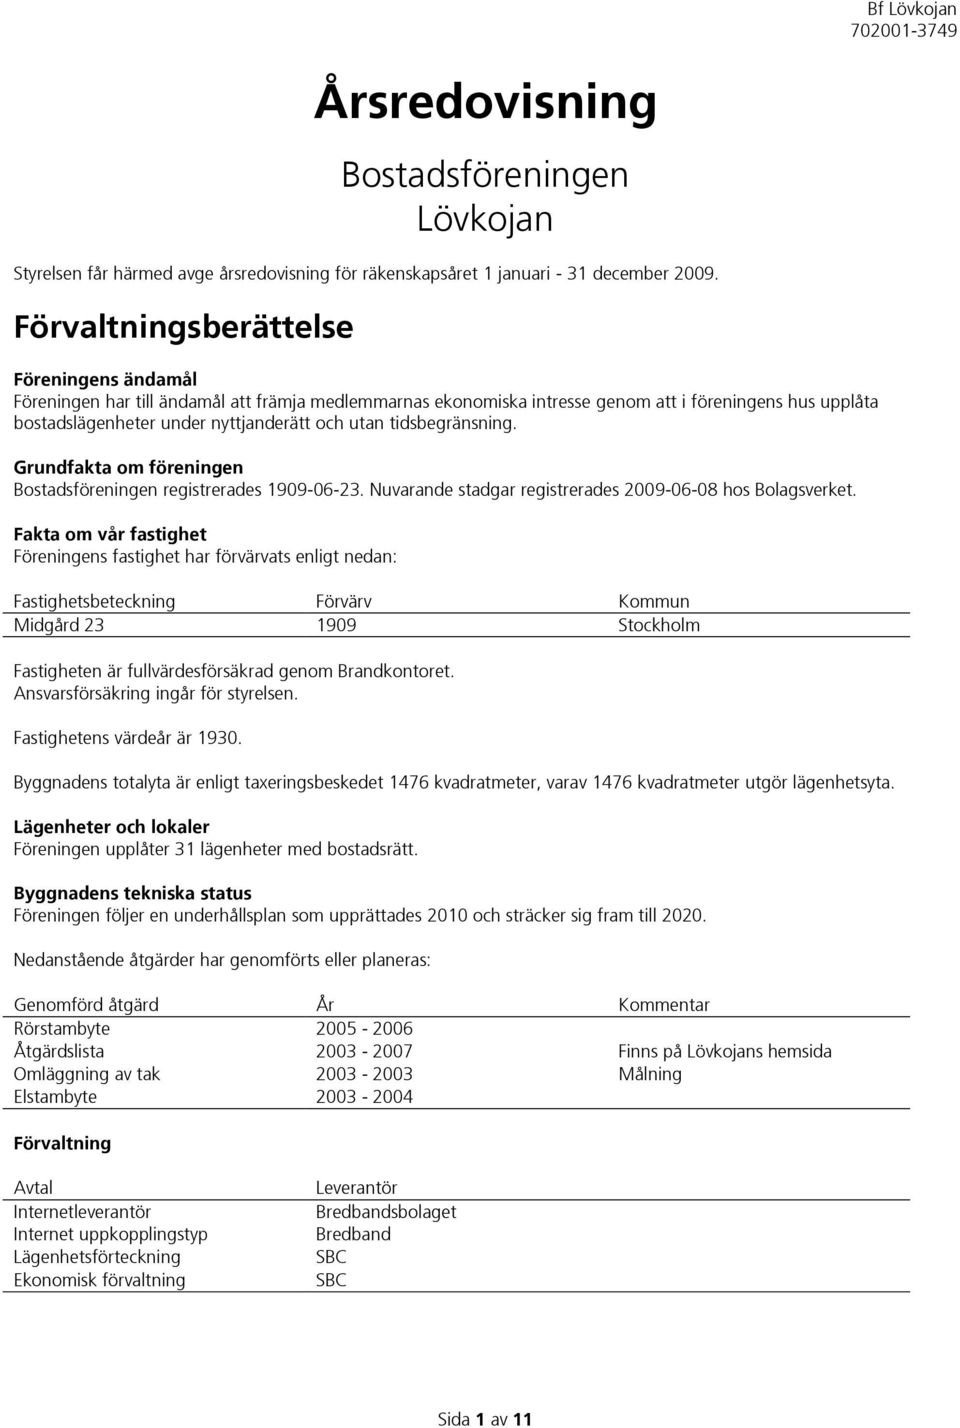 tidsbegränsning. Grundfakta om föreningen Bostadsföreningen registrerades 1909-06-23. Nuvarande stadgar registrerades 2009-06-08 hos Bolagsverket.